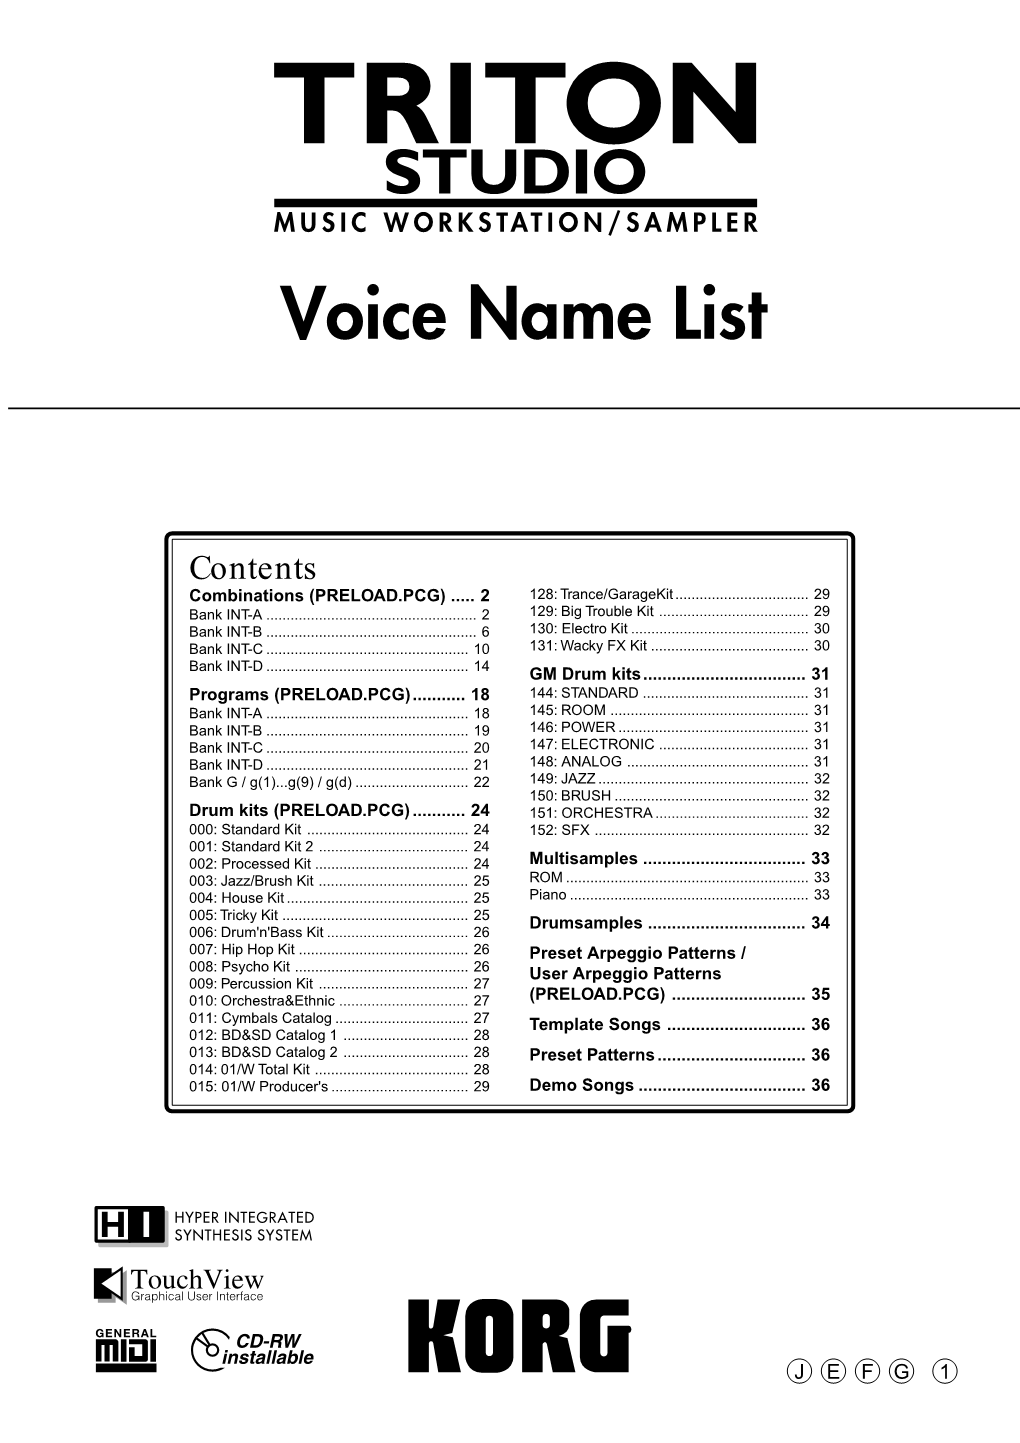 TRITON STUDIO Voice Name List